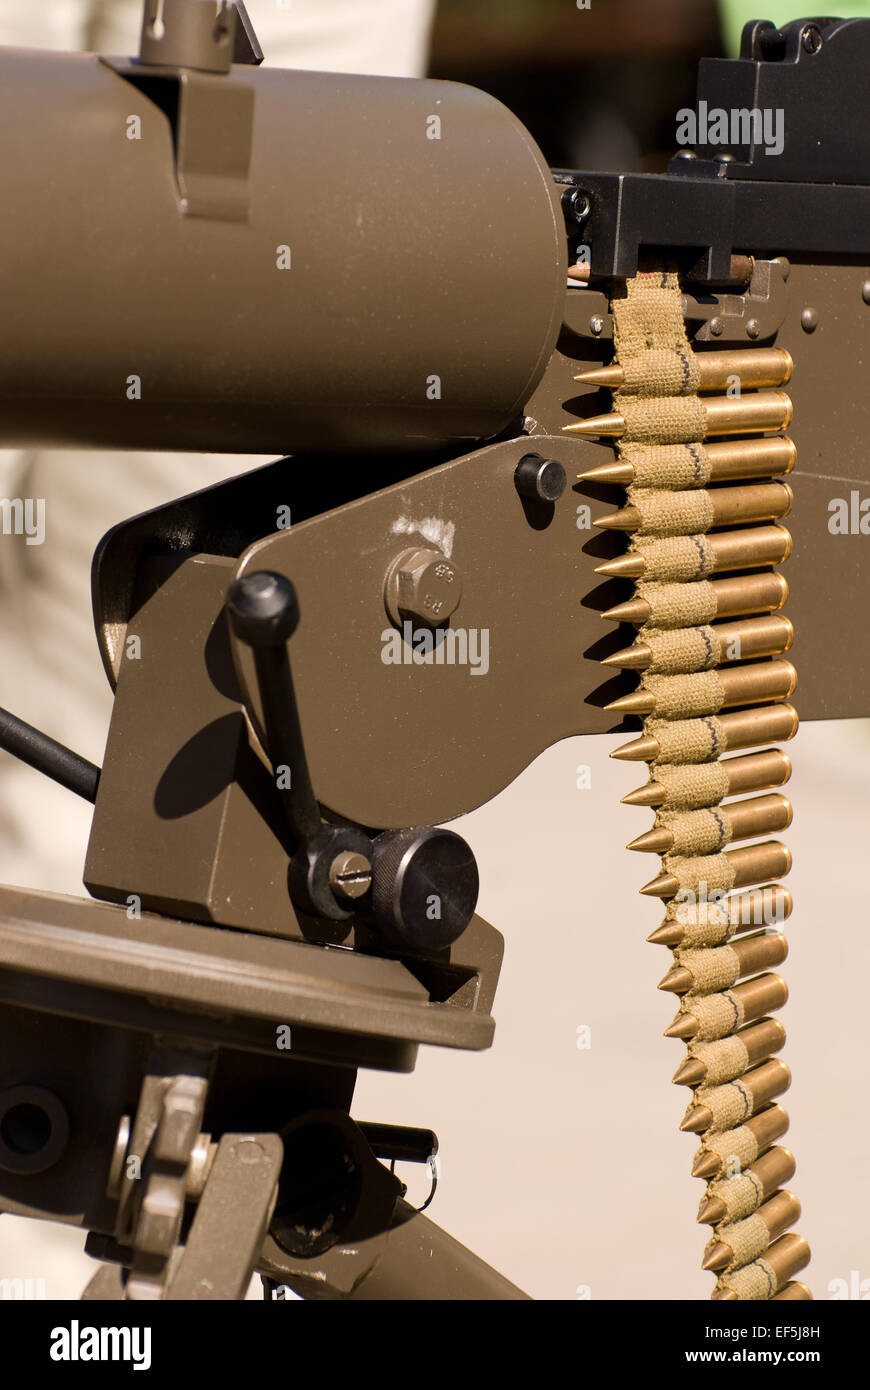 Ckm wz30 machine gun ammo Stock Photo